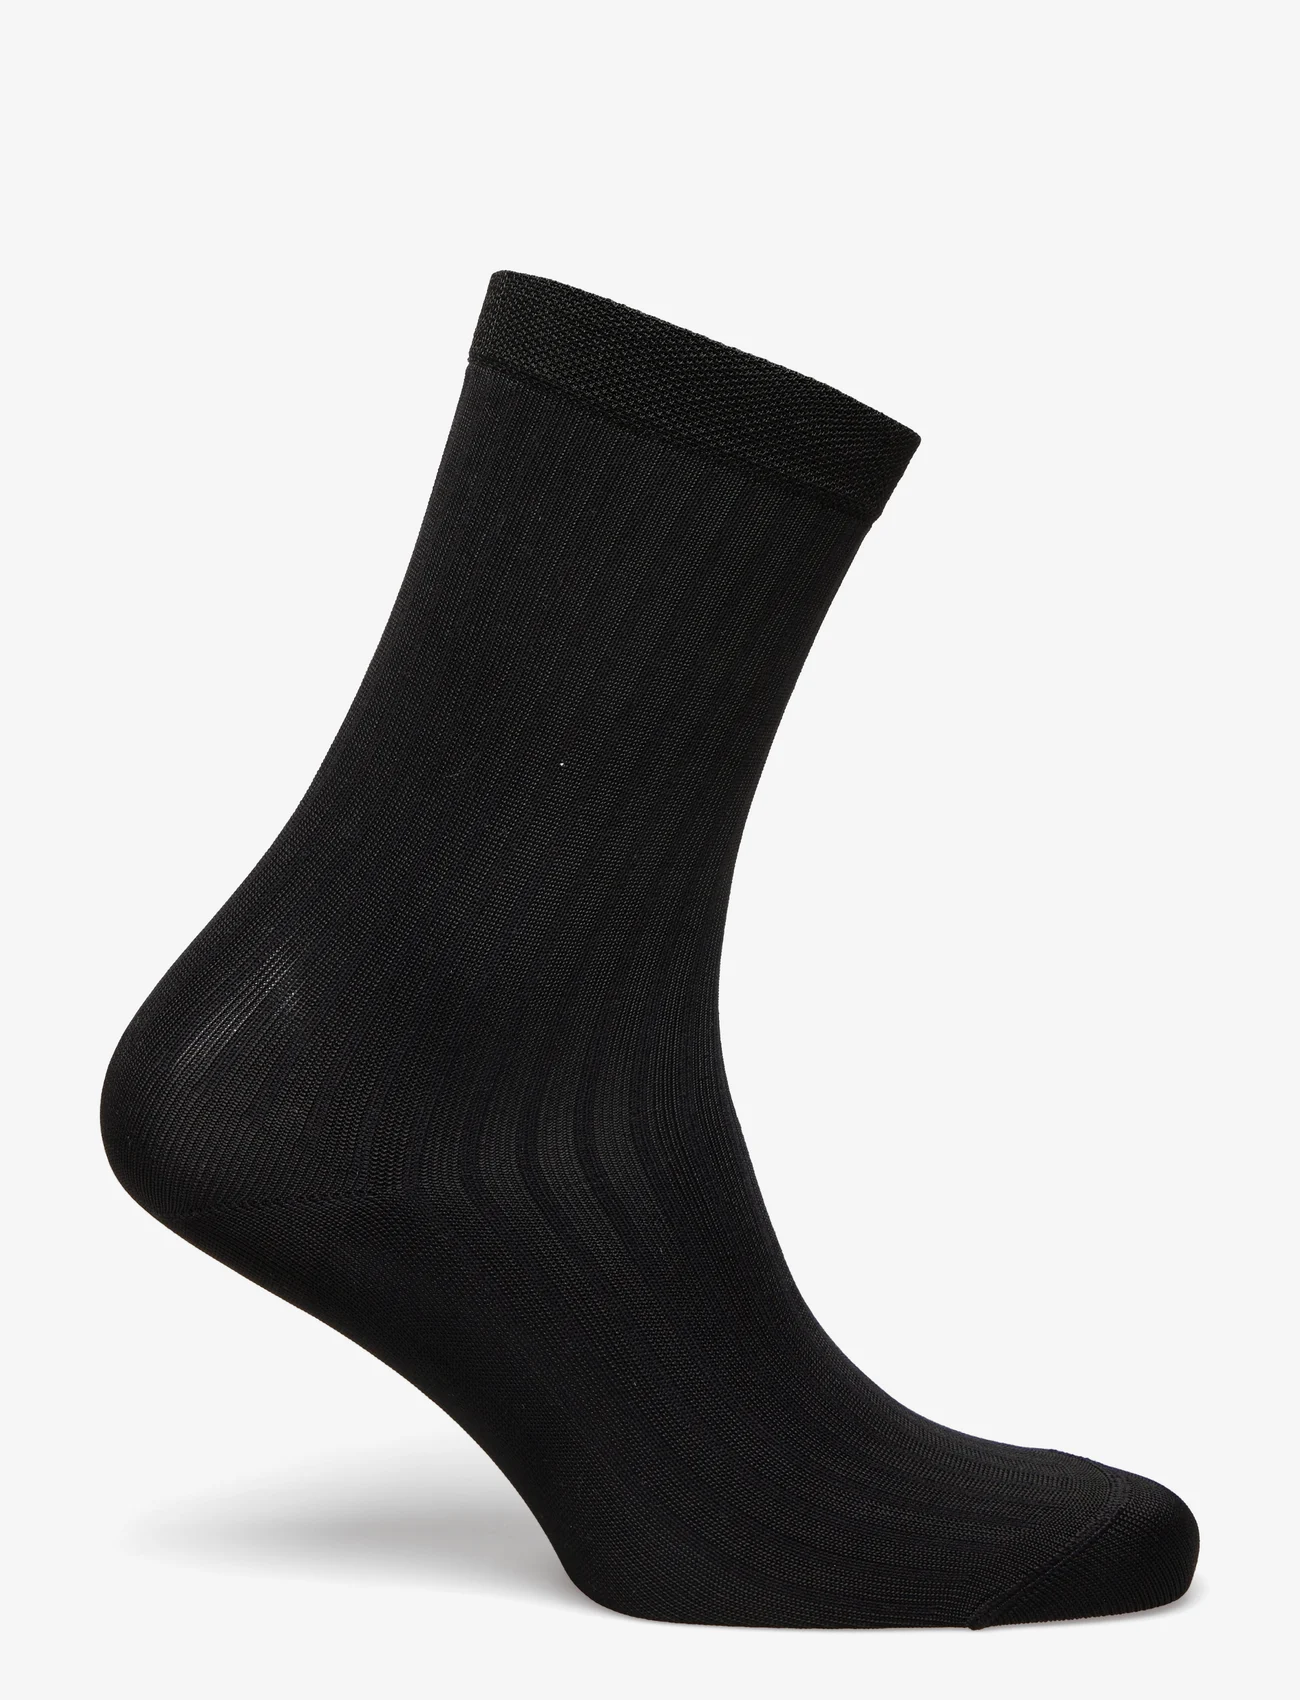 Swedish Stockings - Alexa Silk Touch Socks - zemākās cenas - black - 1